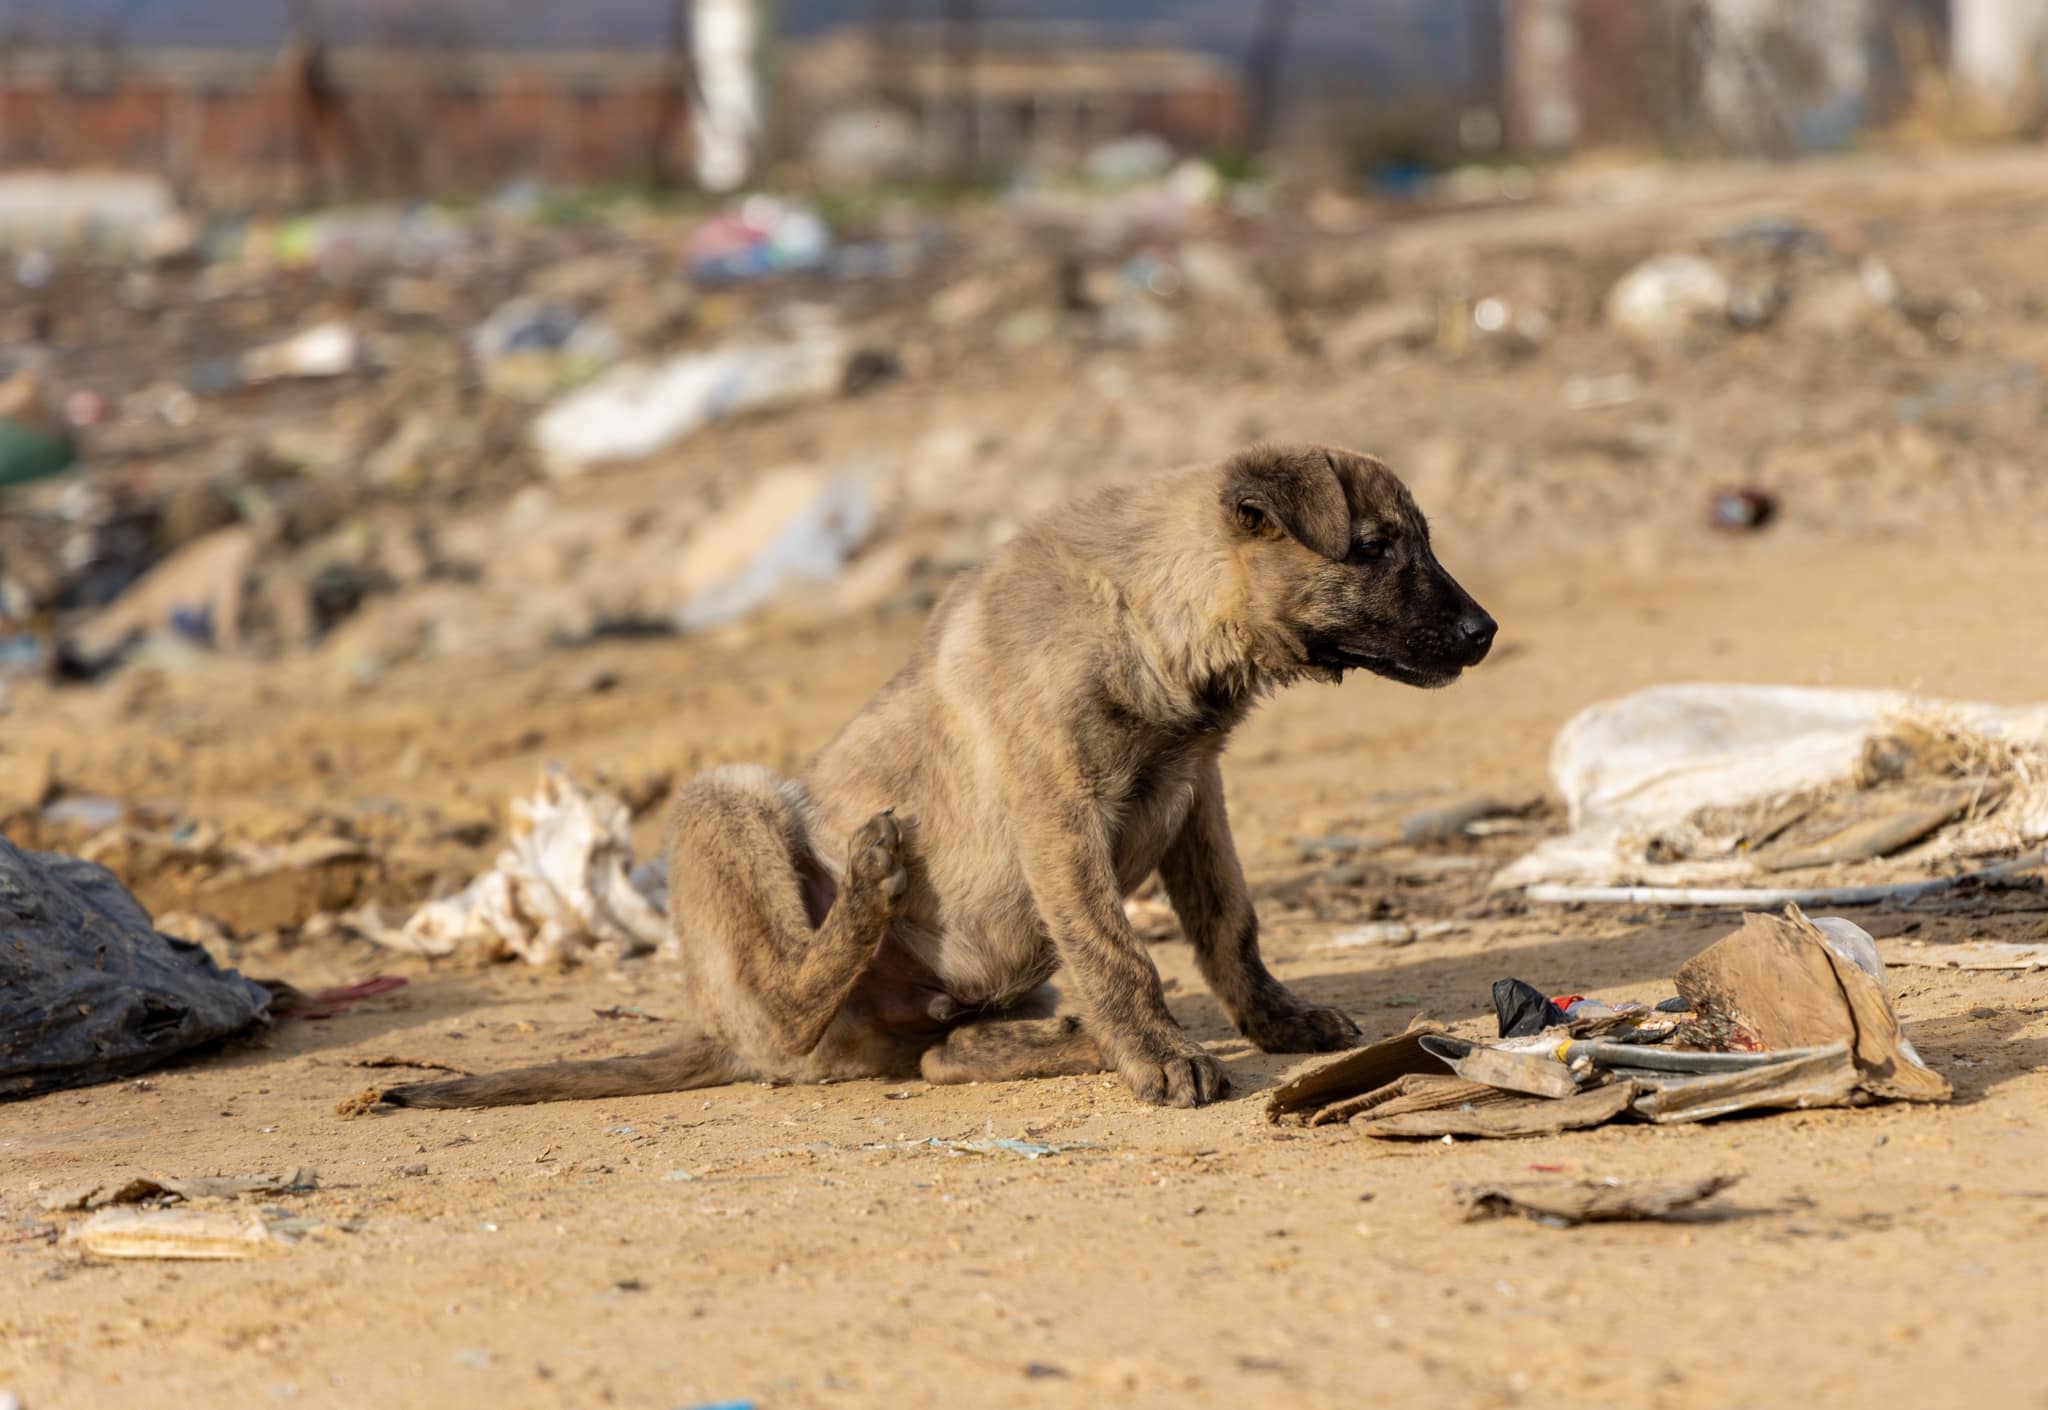 Χωματερή Ξάνθης: Εκατοντάδες αδέσποτα σκυλιά αργοπεθαίνουν 